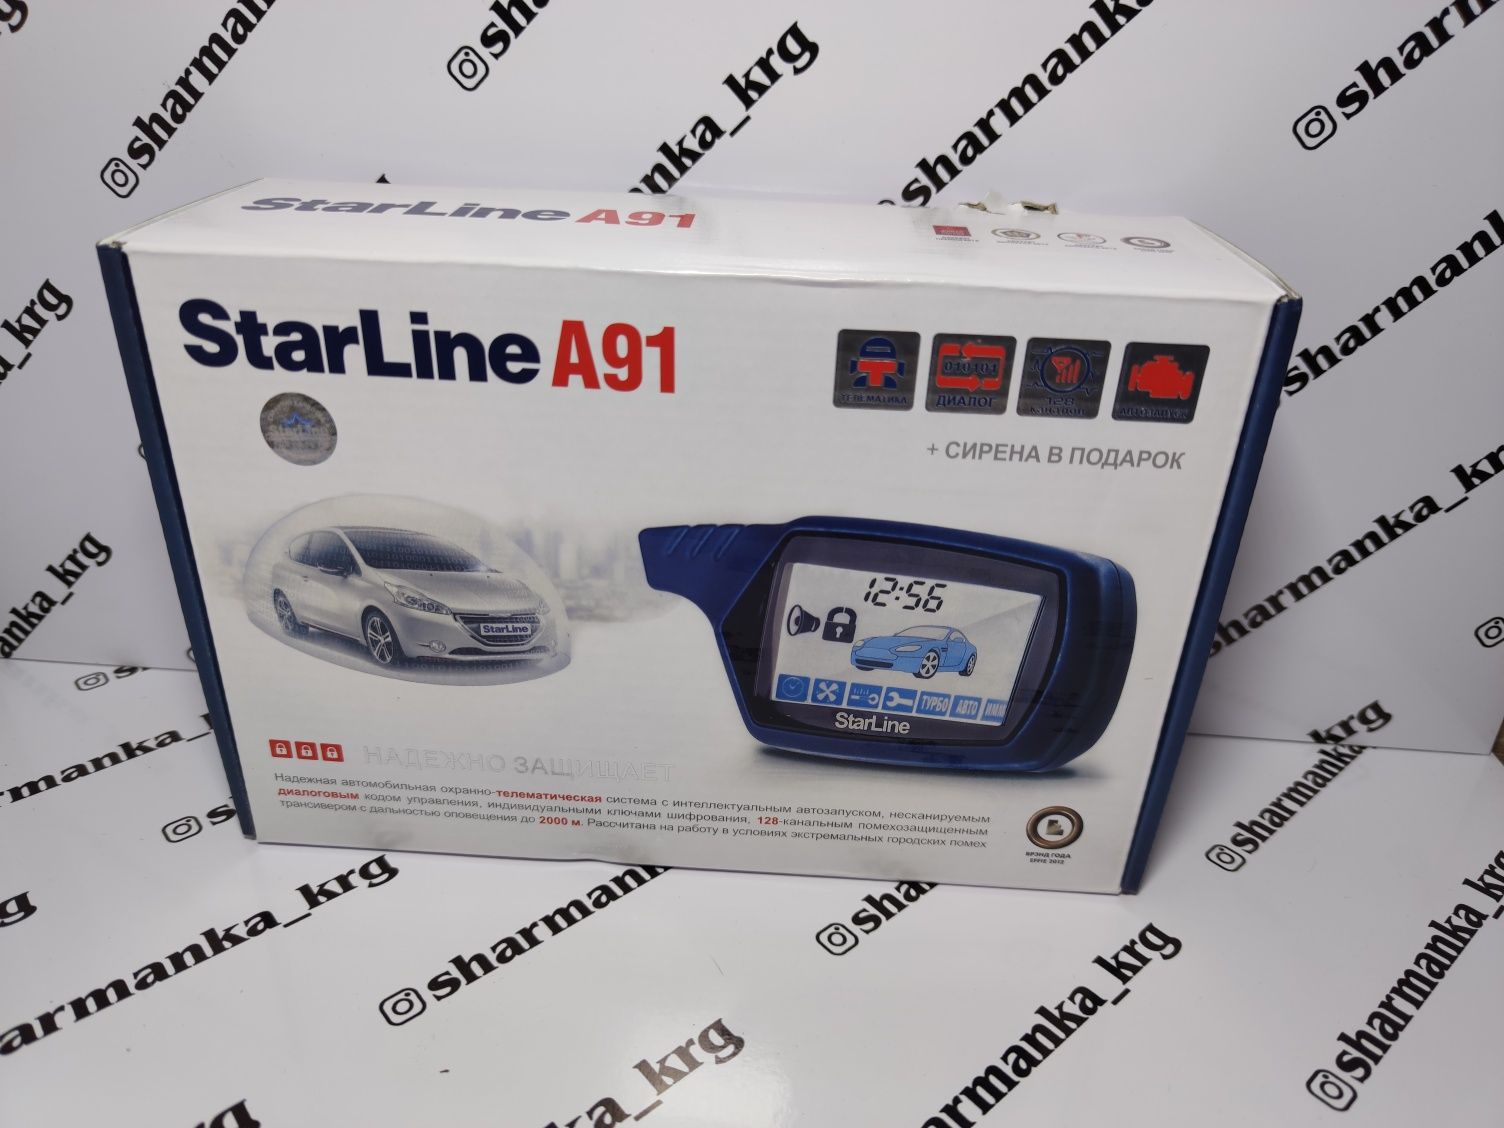 Сигнализация StarLine A91 Старлайн хорошего качества есть установка